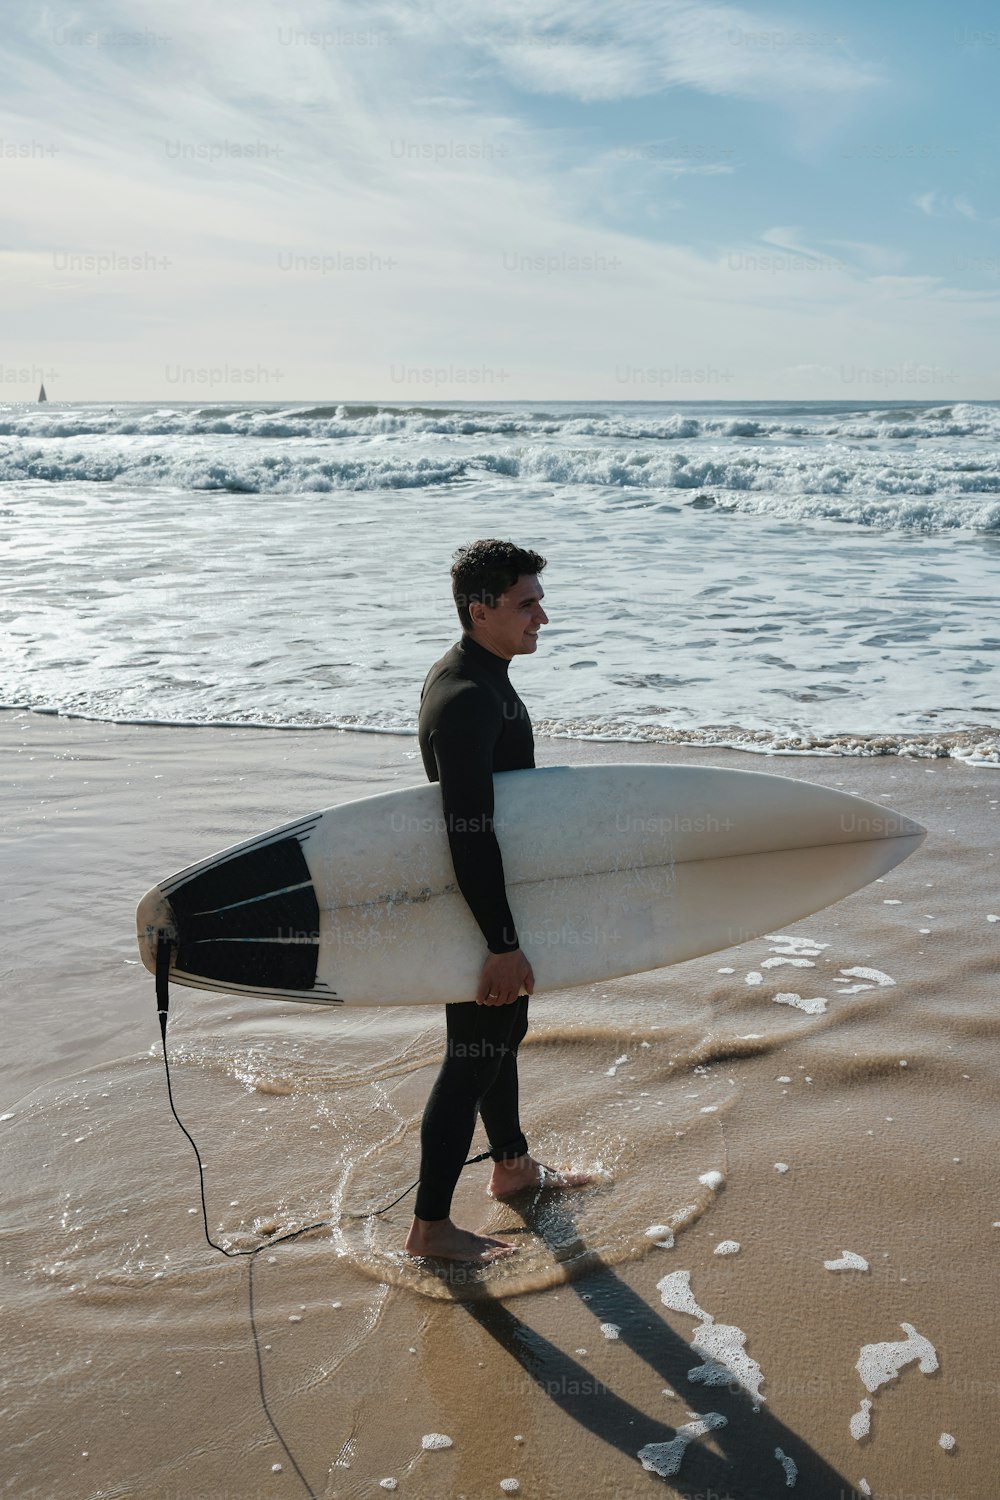 해변에서 서핑 보드를 들고 잠수복을 입은 남자